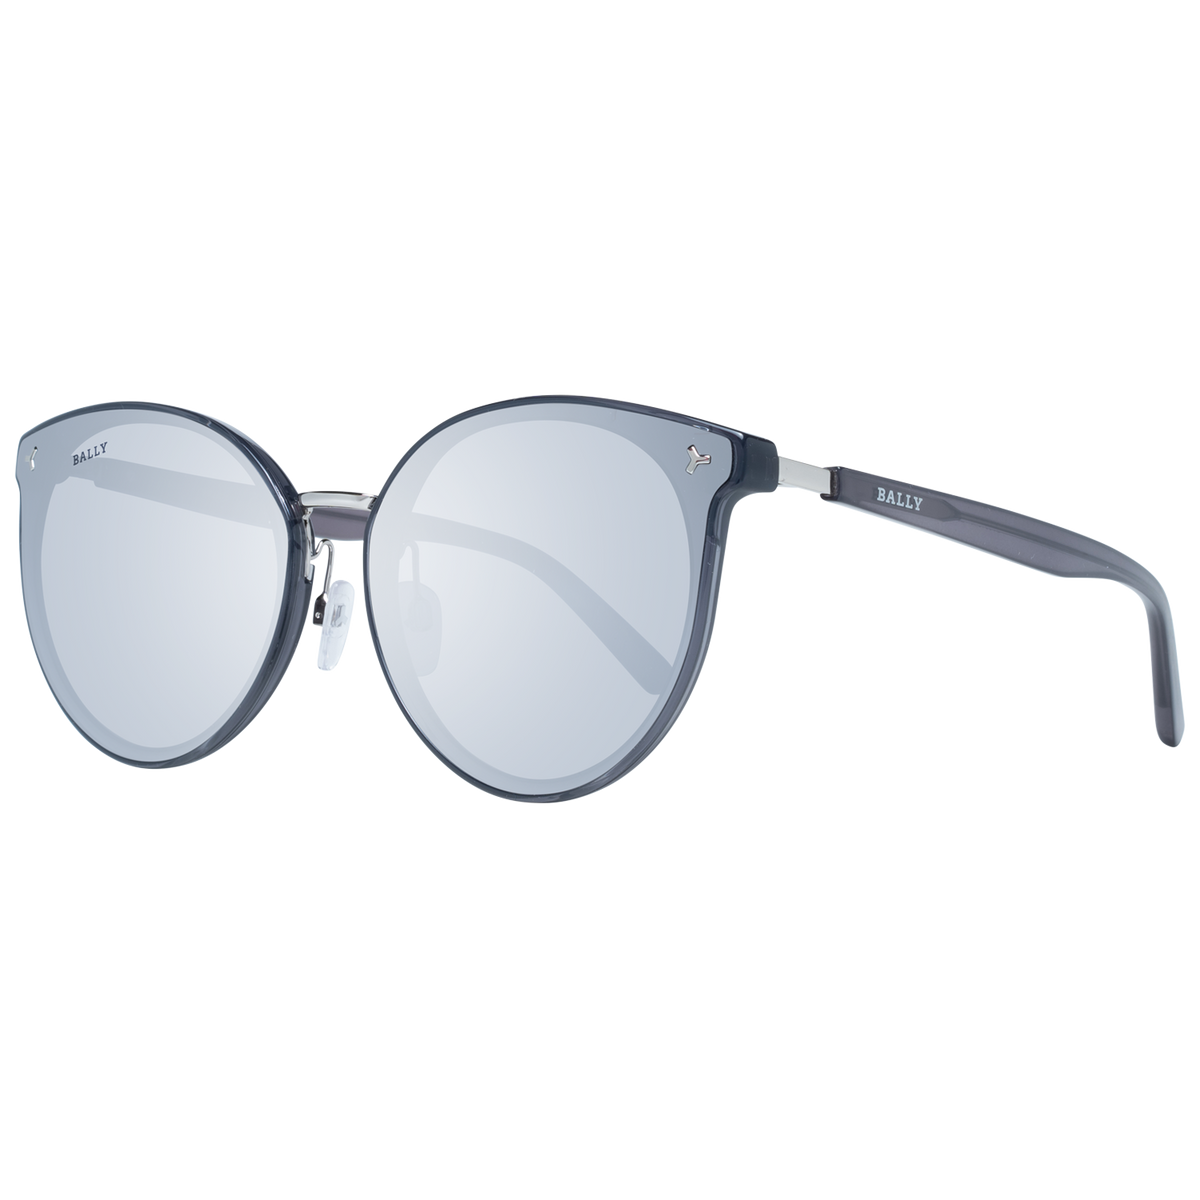 bally sunglasses by0043 k 20c 65 designer uk sales men women outlet designershadesdirect bicester village designer outlet westfield